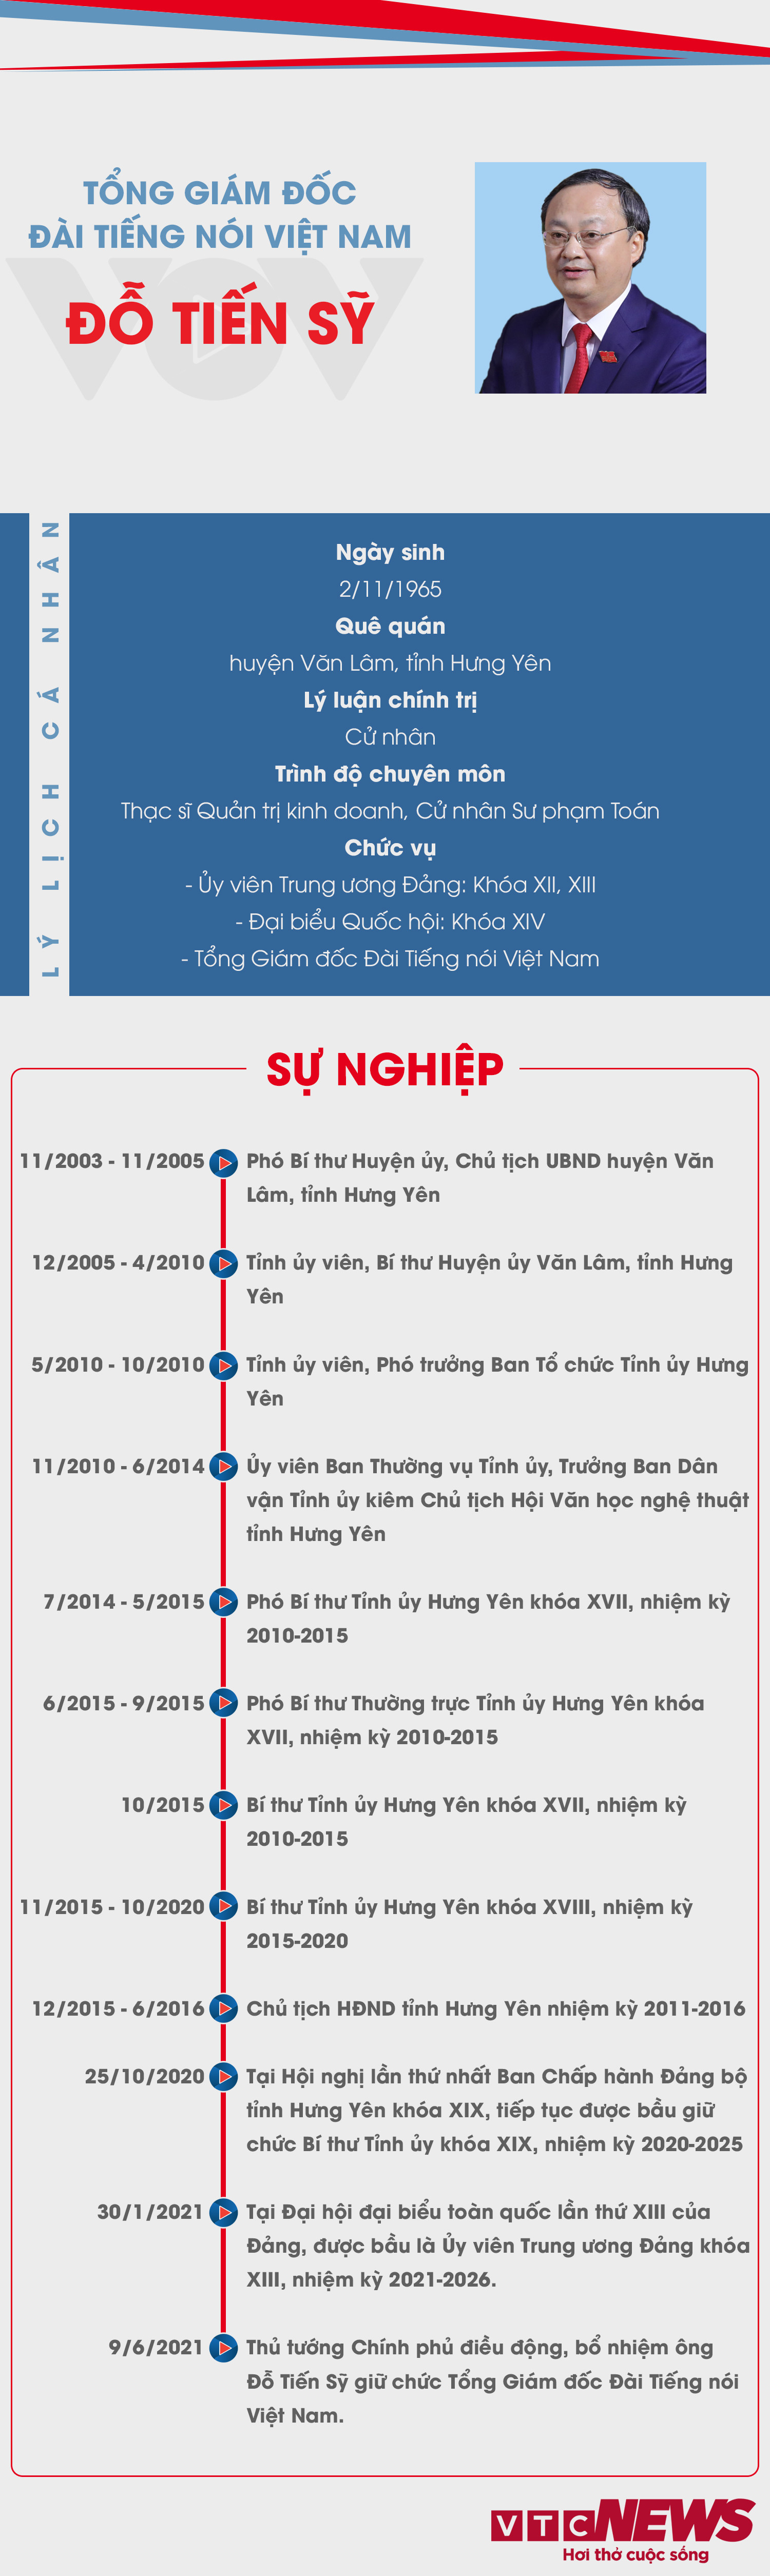 Infographic: Sự nghiệp Tổng Giám đốc Đài Tiếng nói Việt Nam Đỗ Tiến Sỹ - 1